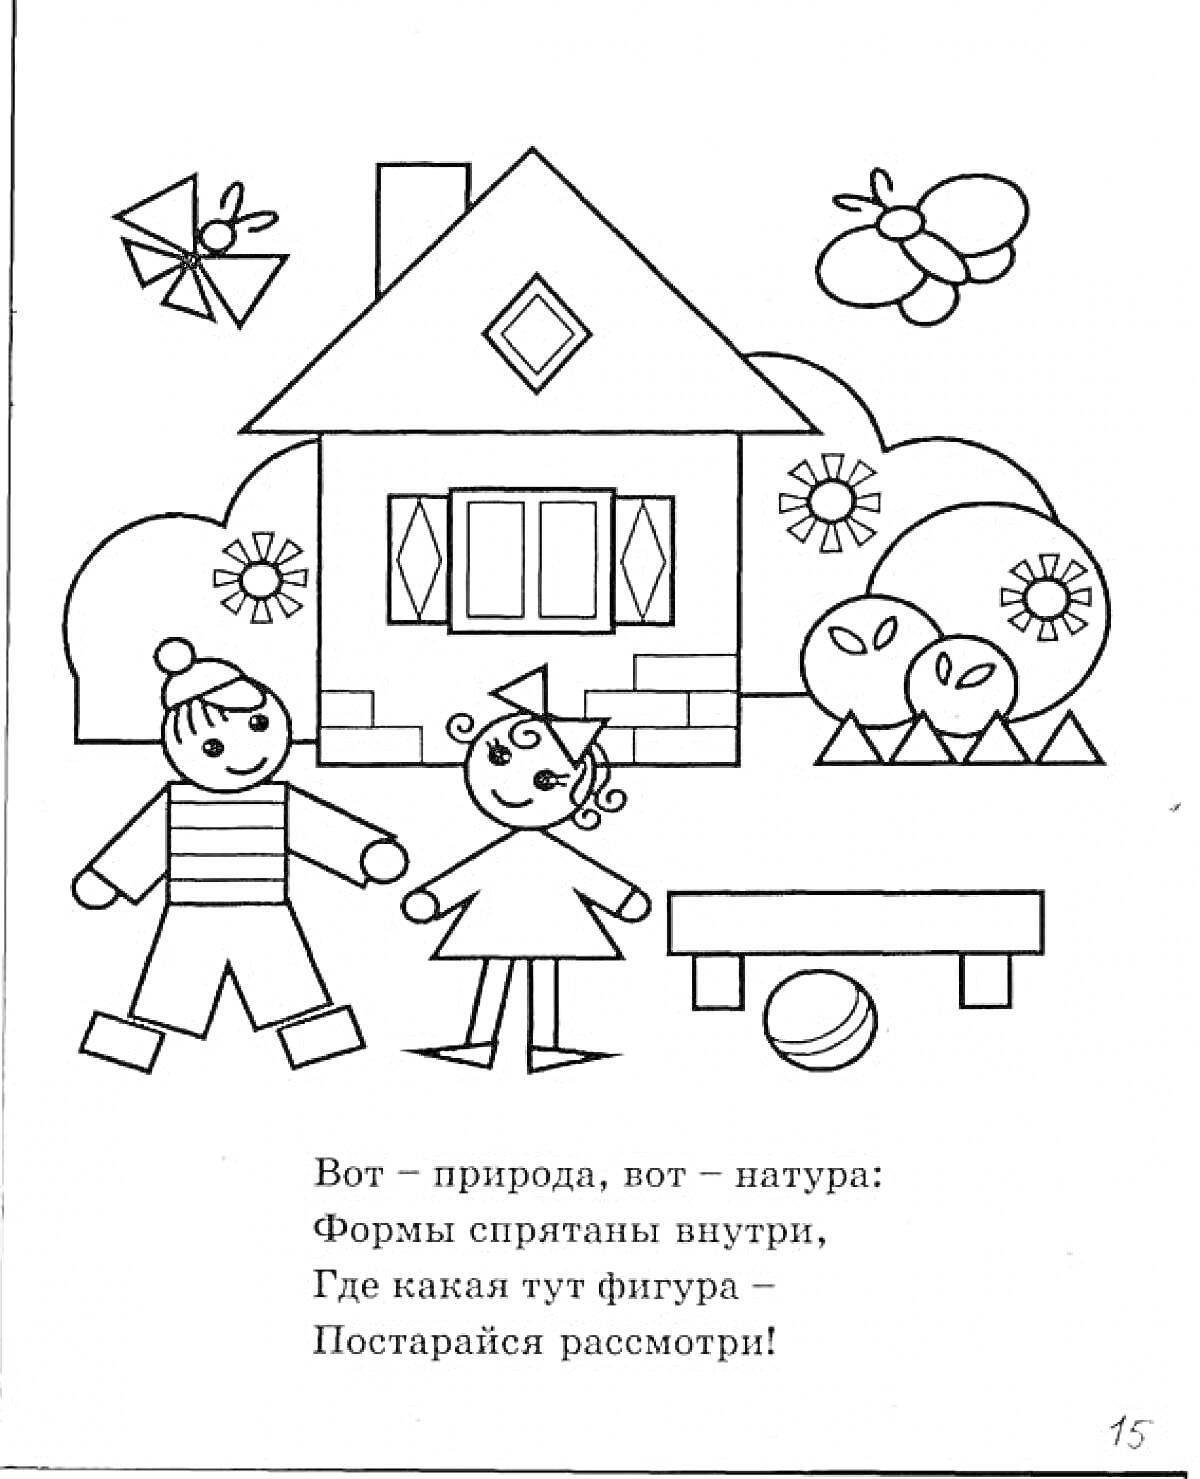 Дети перед домом с геометрическими фигурами, бабочка, мяч и цветы